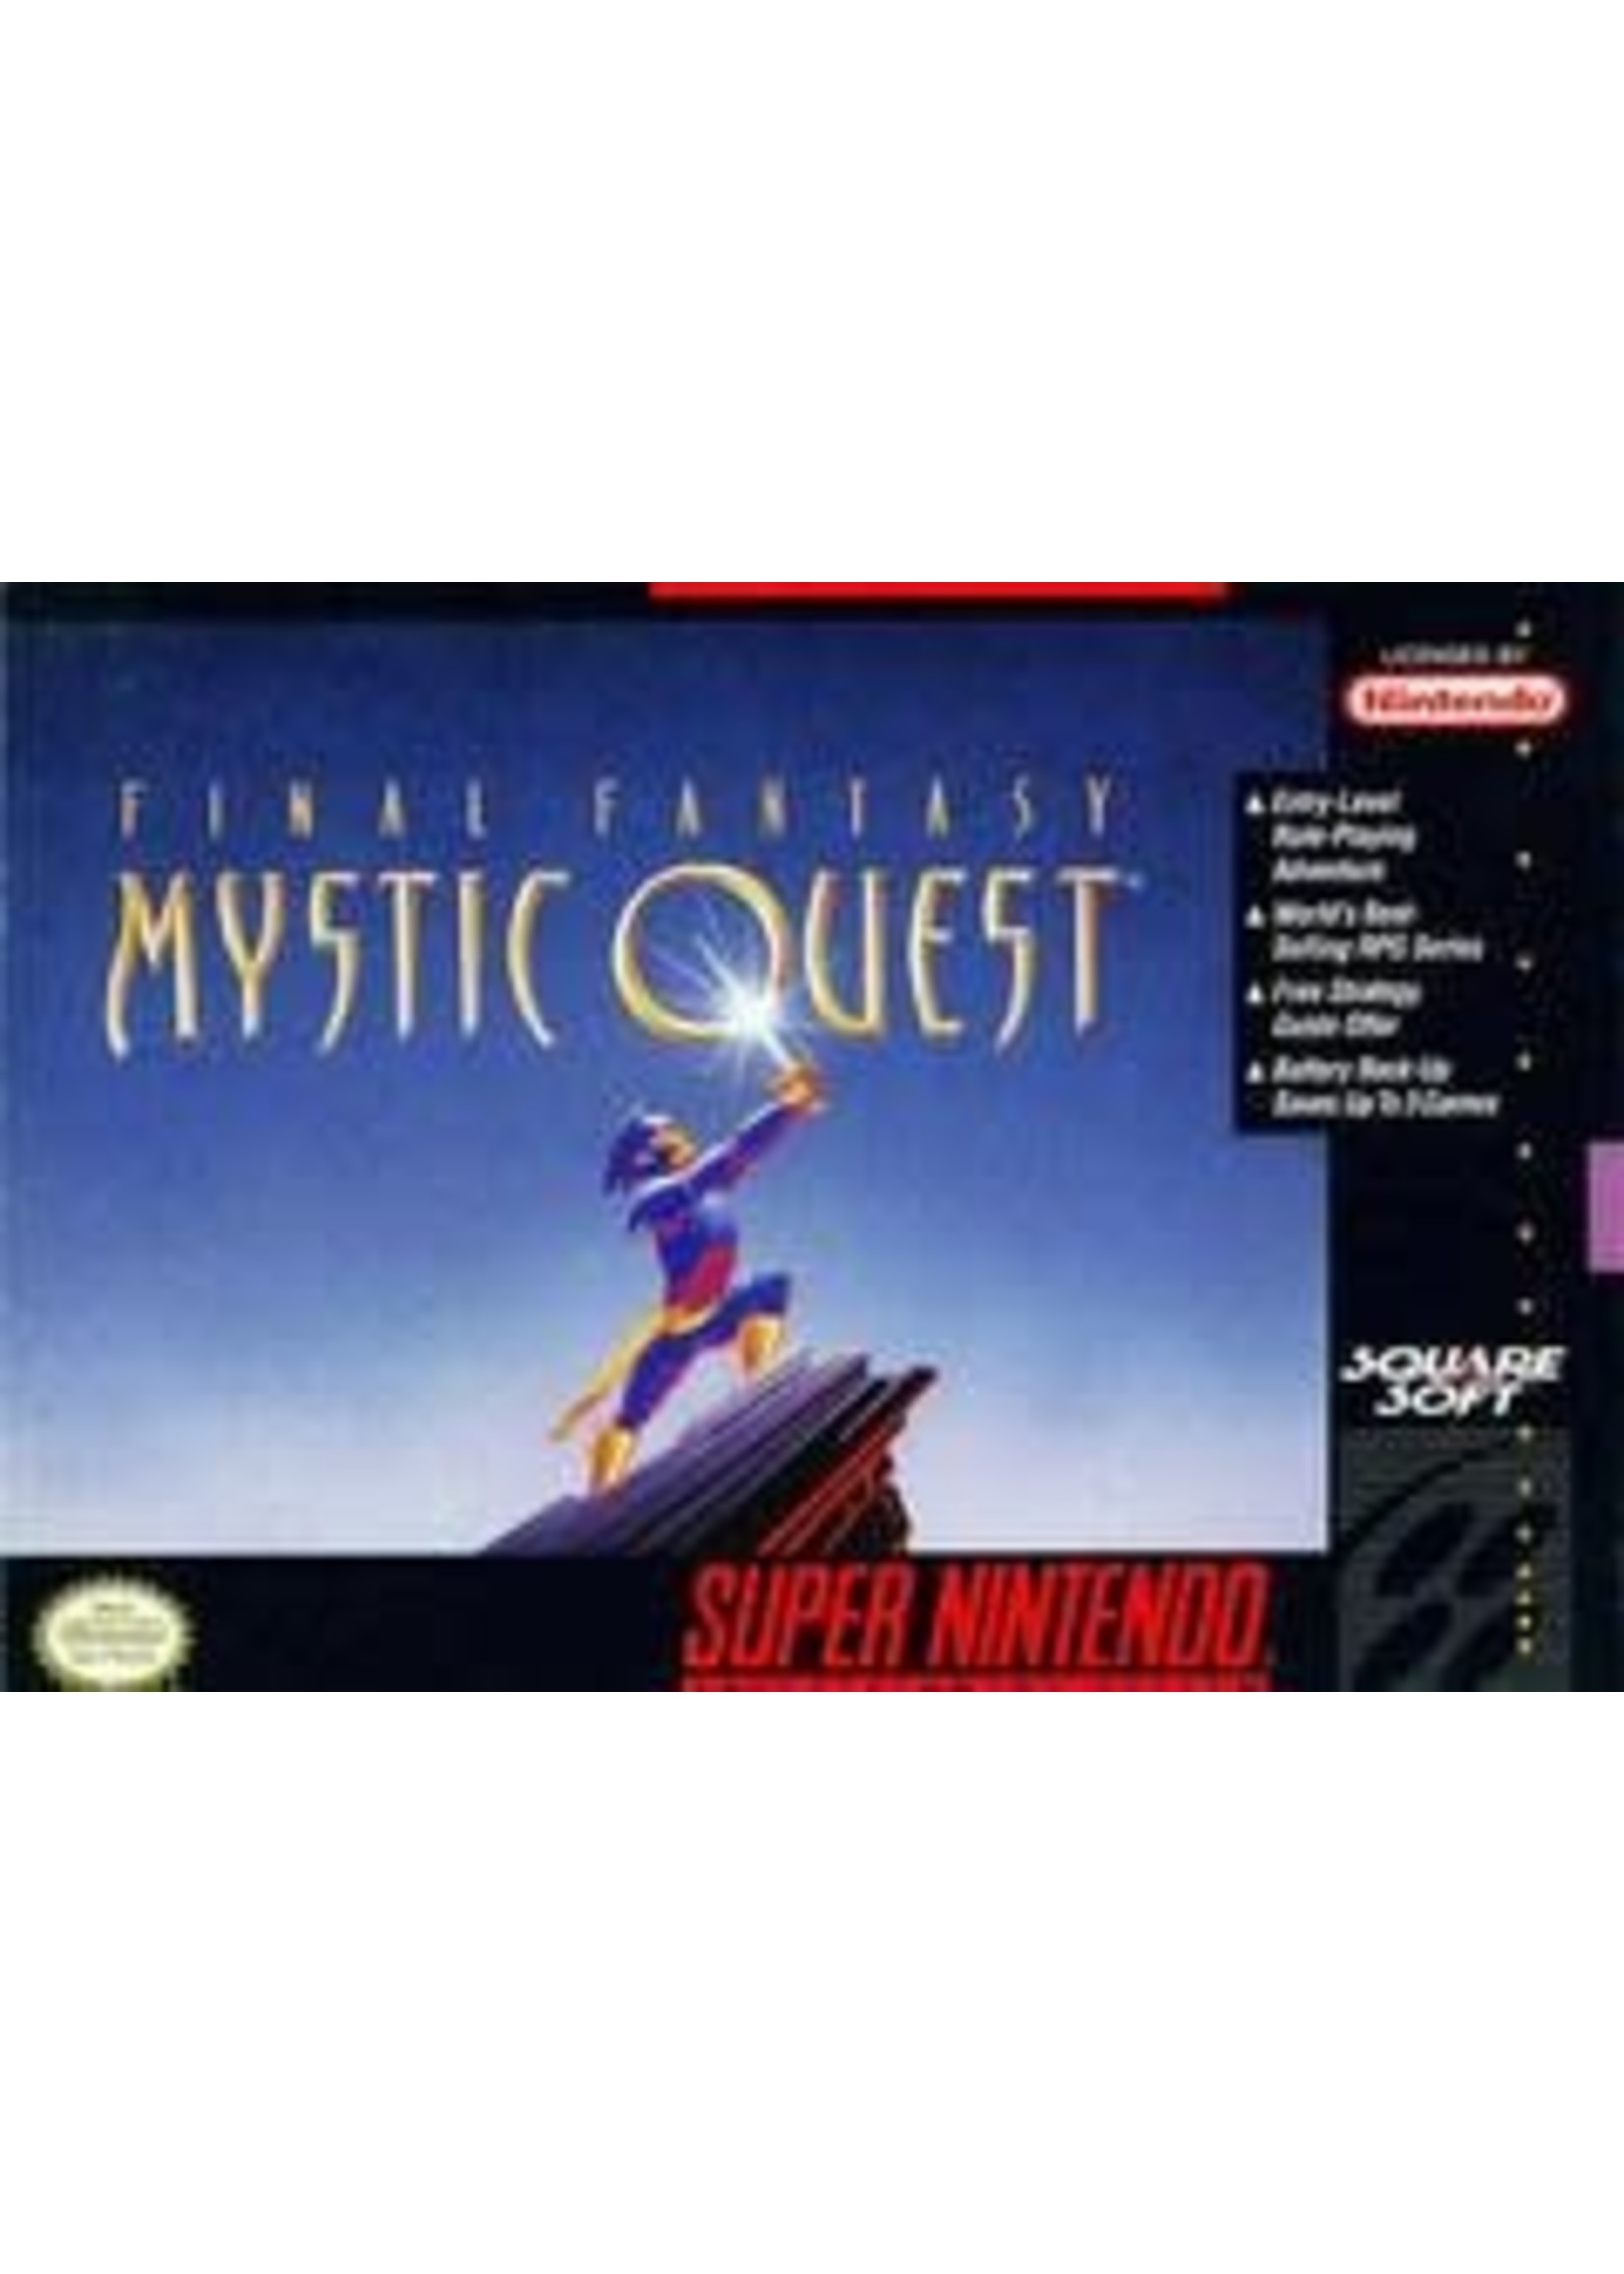 Final Fantasy Mystic Quest Super Nintendo CART ONLY